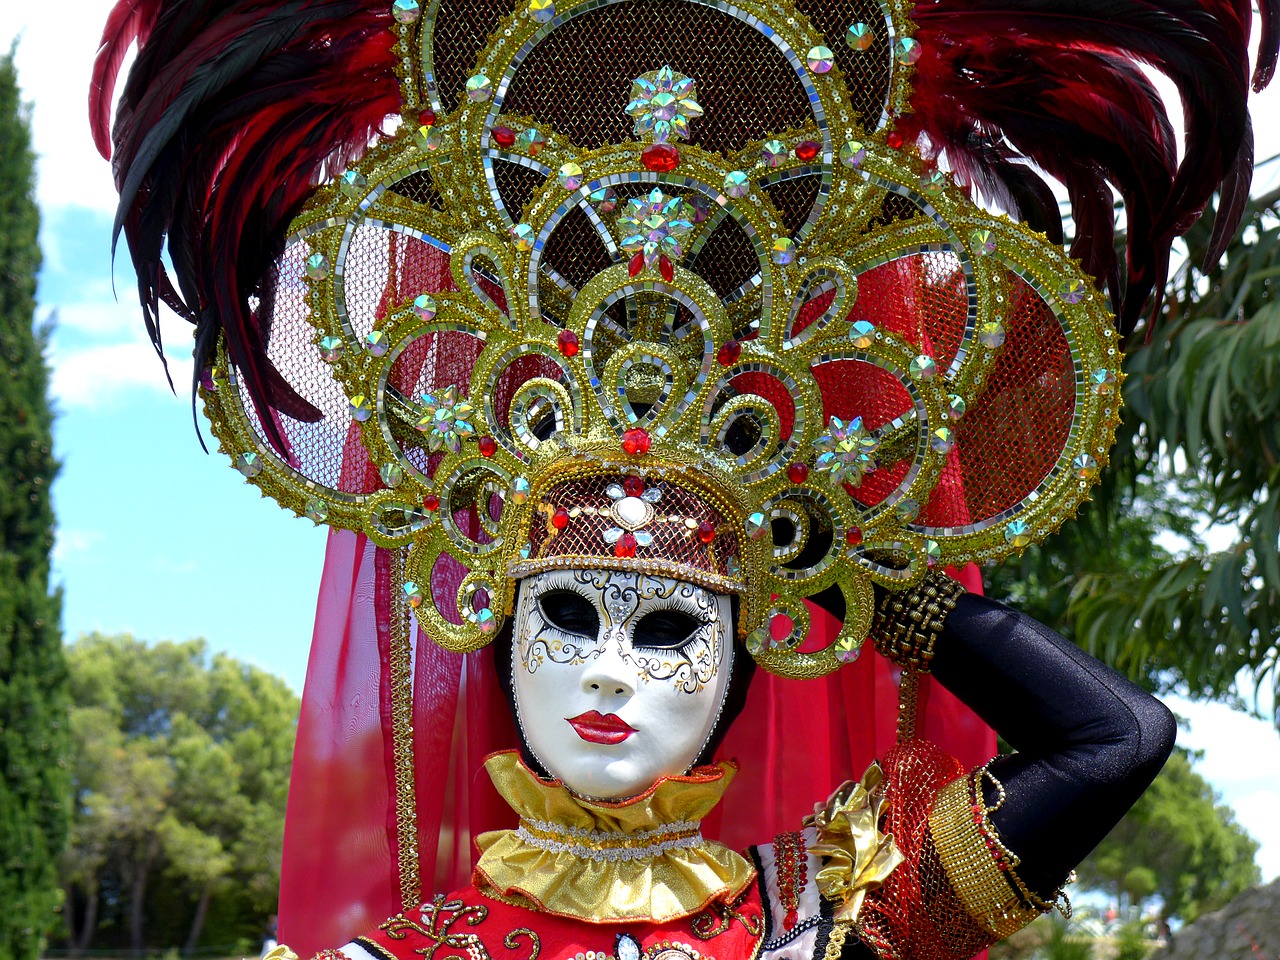 carnival of venice mask of venice masks free photo